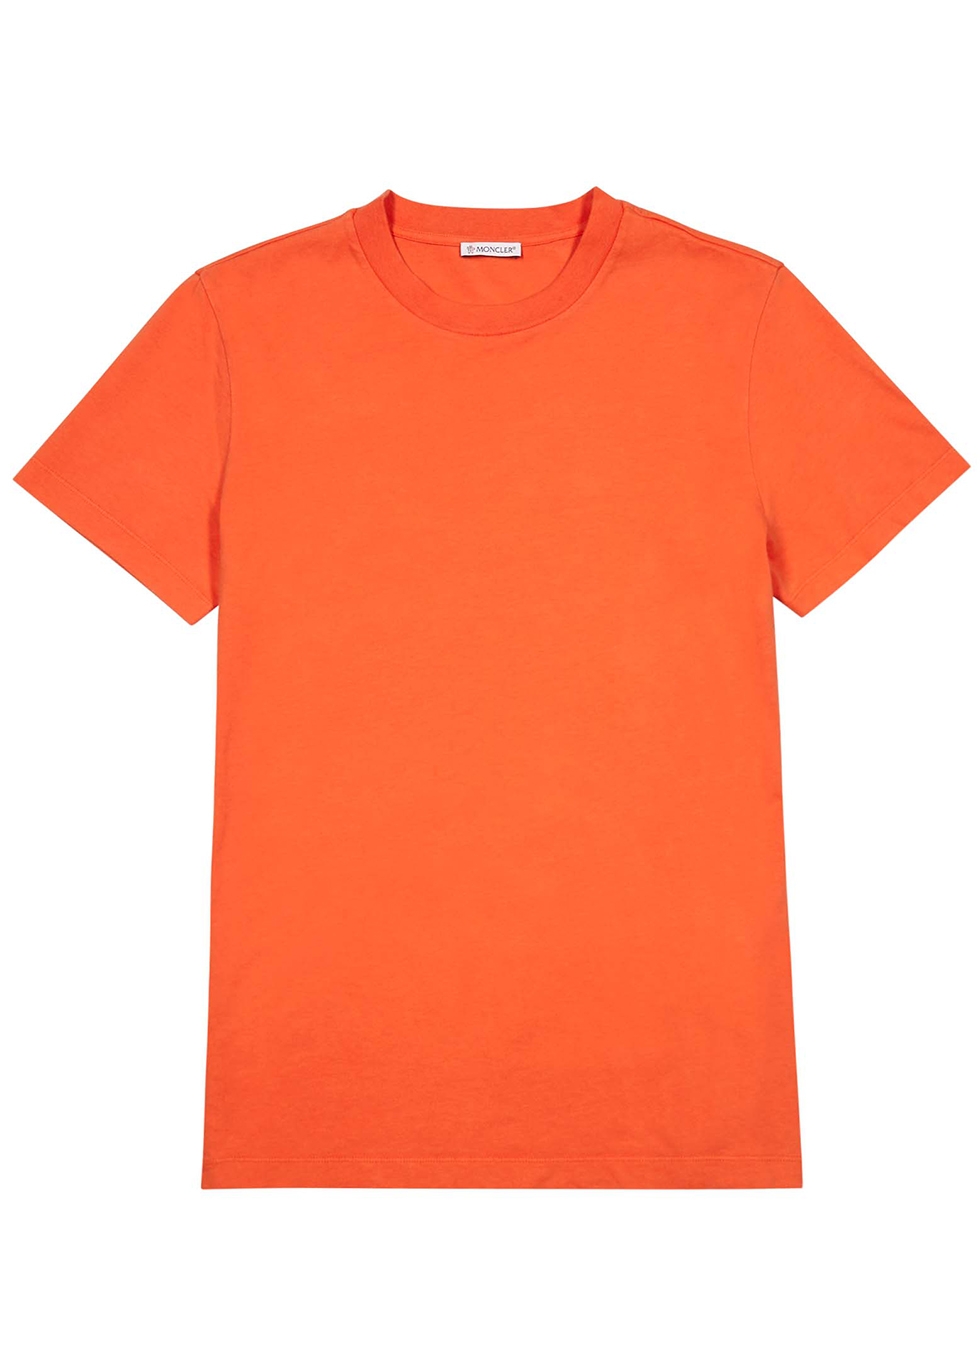 moncler orange t shirt